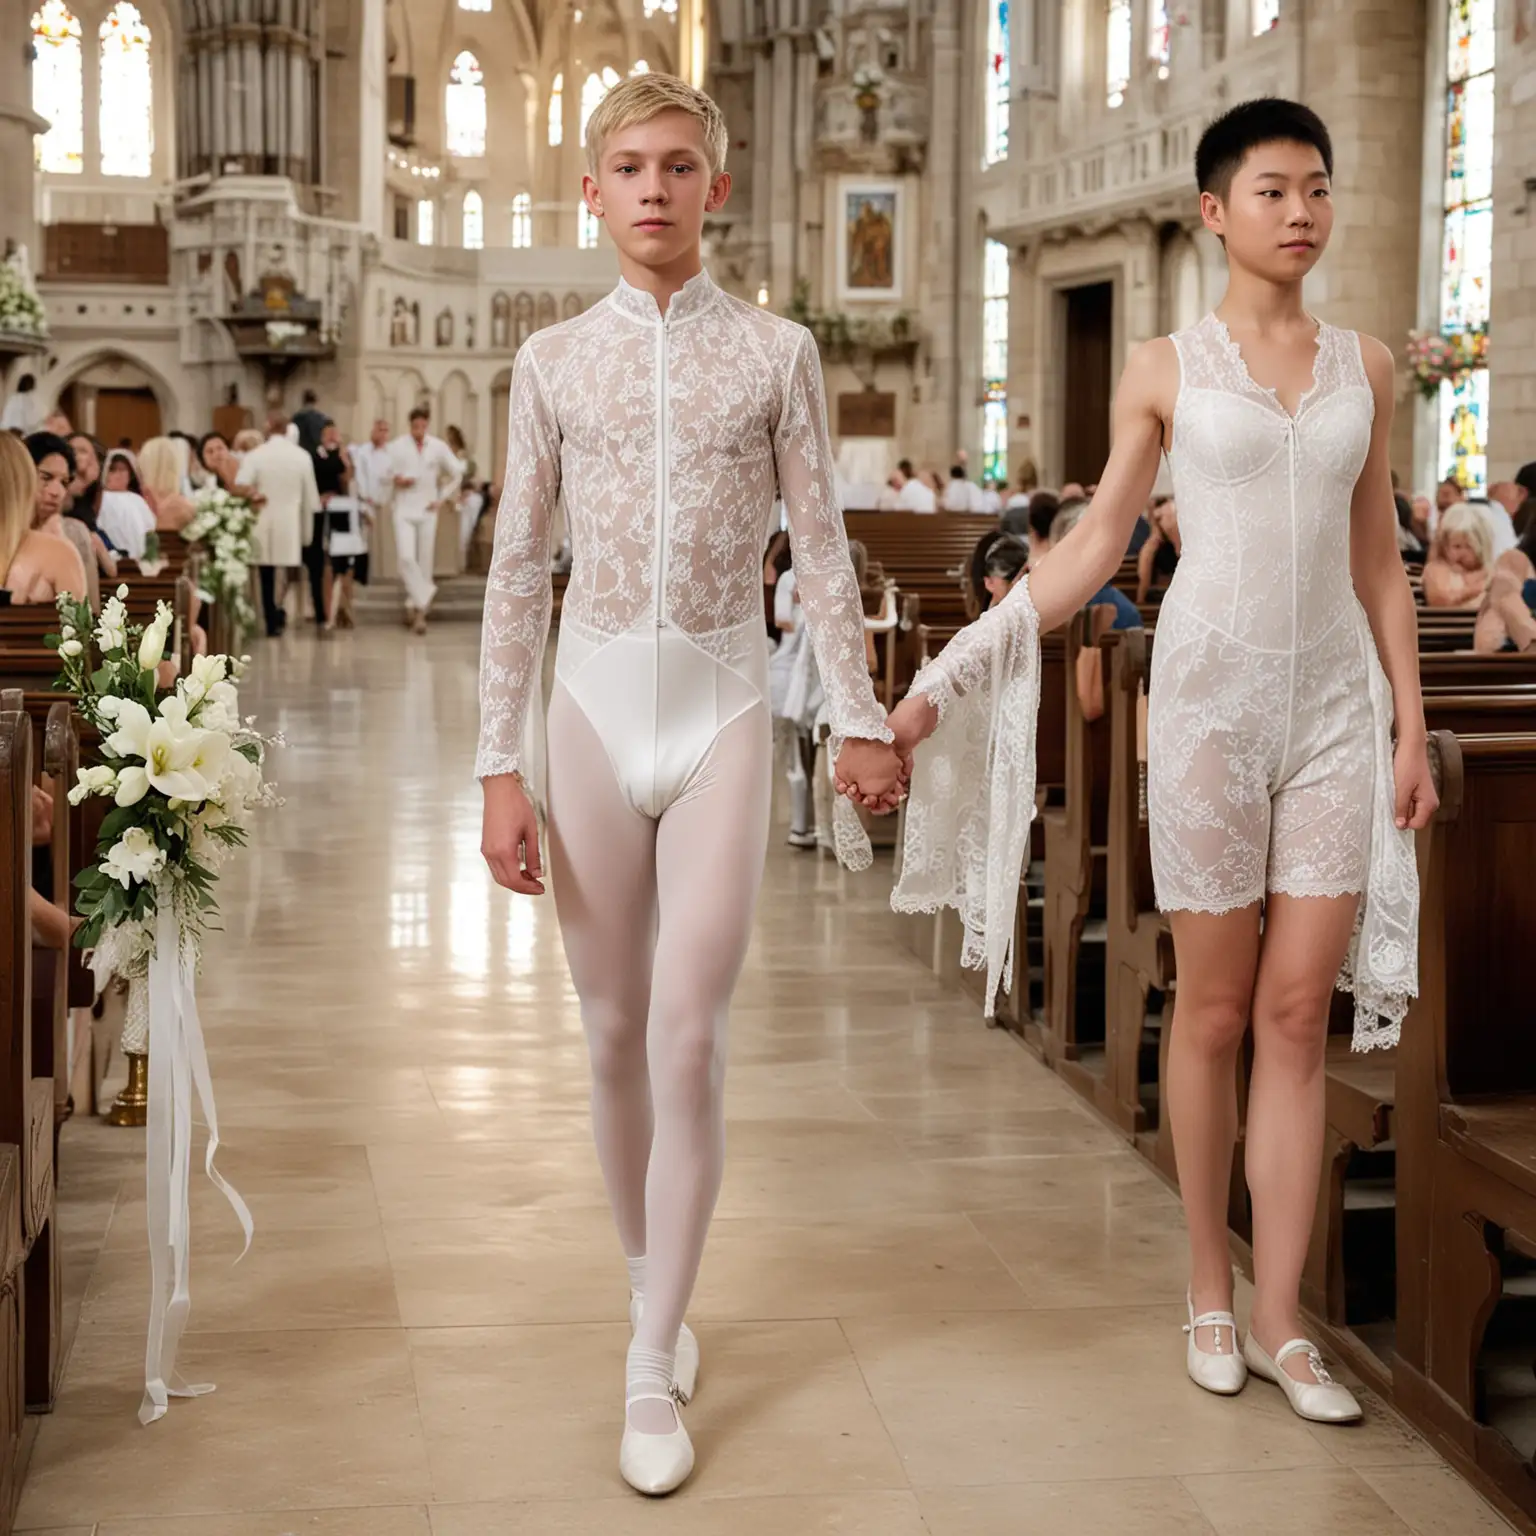 Elegant-Wedding-Scene-Thin-Male-Duo-in-White-Lace-Attire